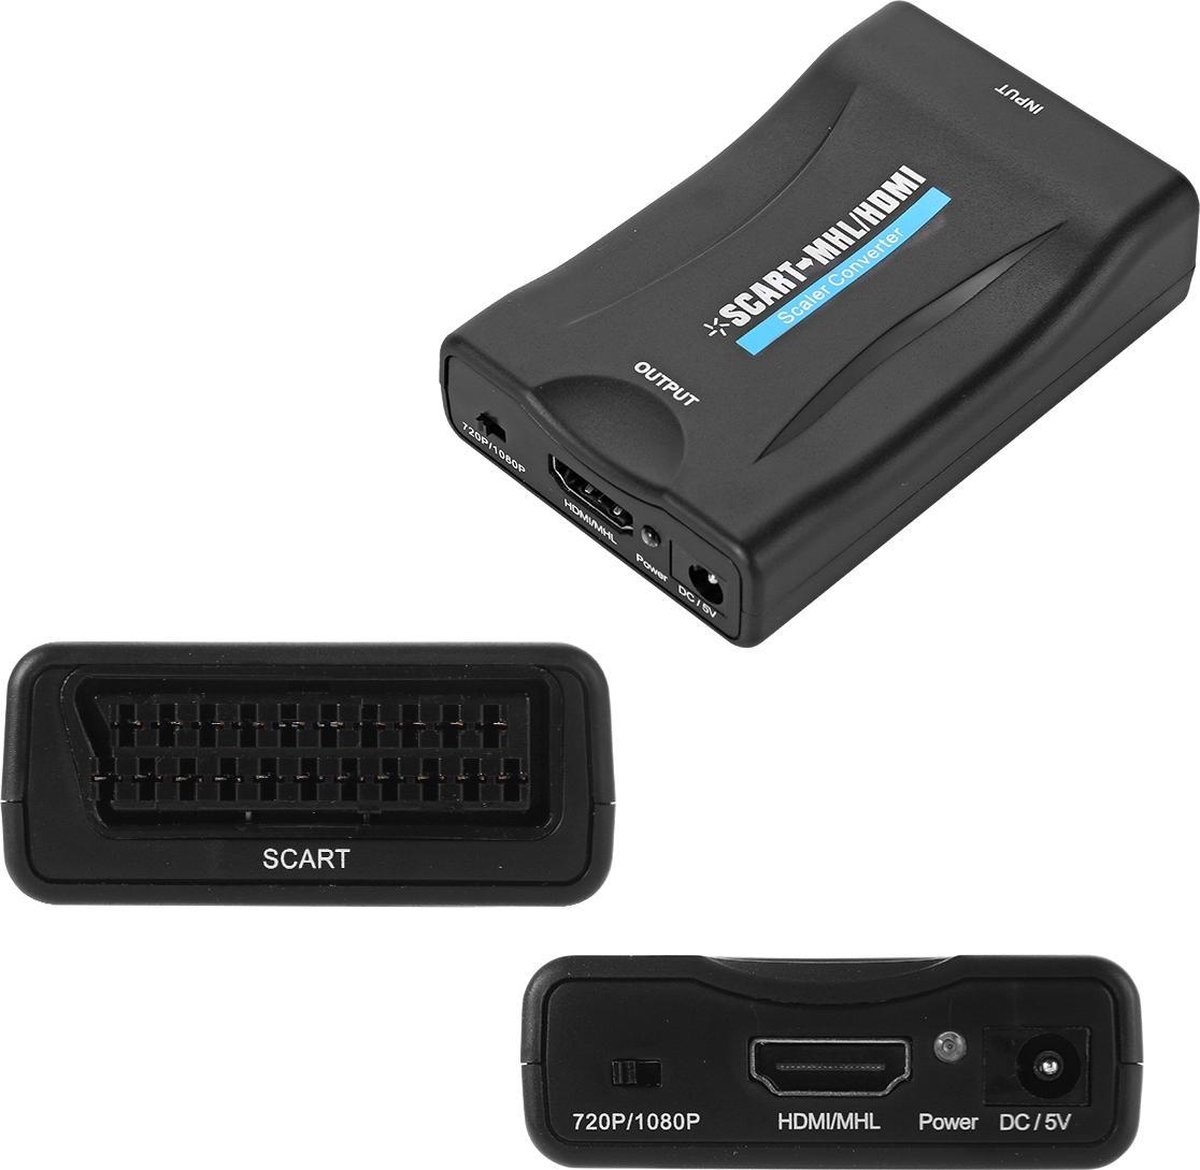 gemeenschap Geliefde pasta Scart naar HDMI Adapter - Full HD - 720P / 1080P - Plug & Play - Scart  Schakelaar - Zwart | Case2go.nl